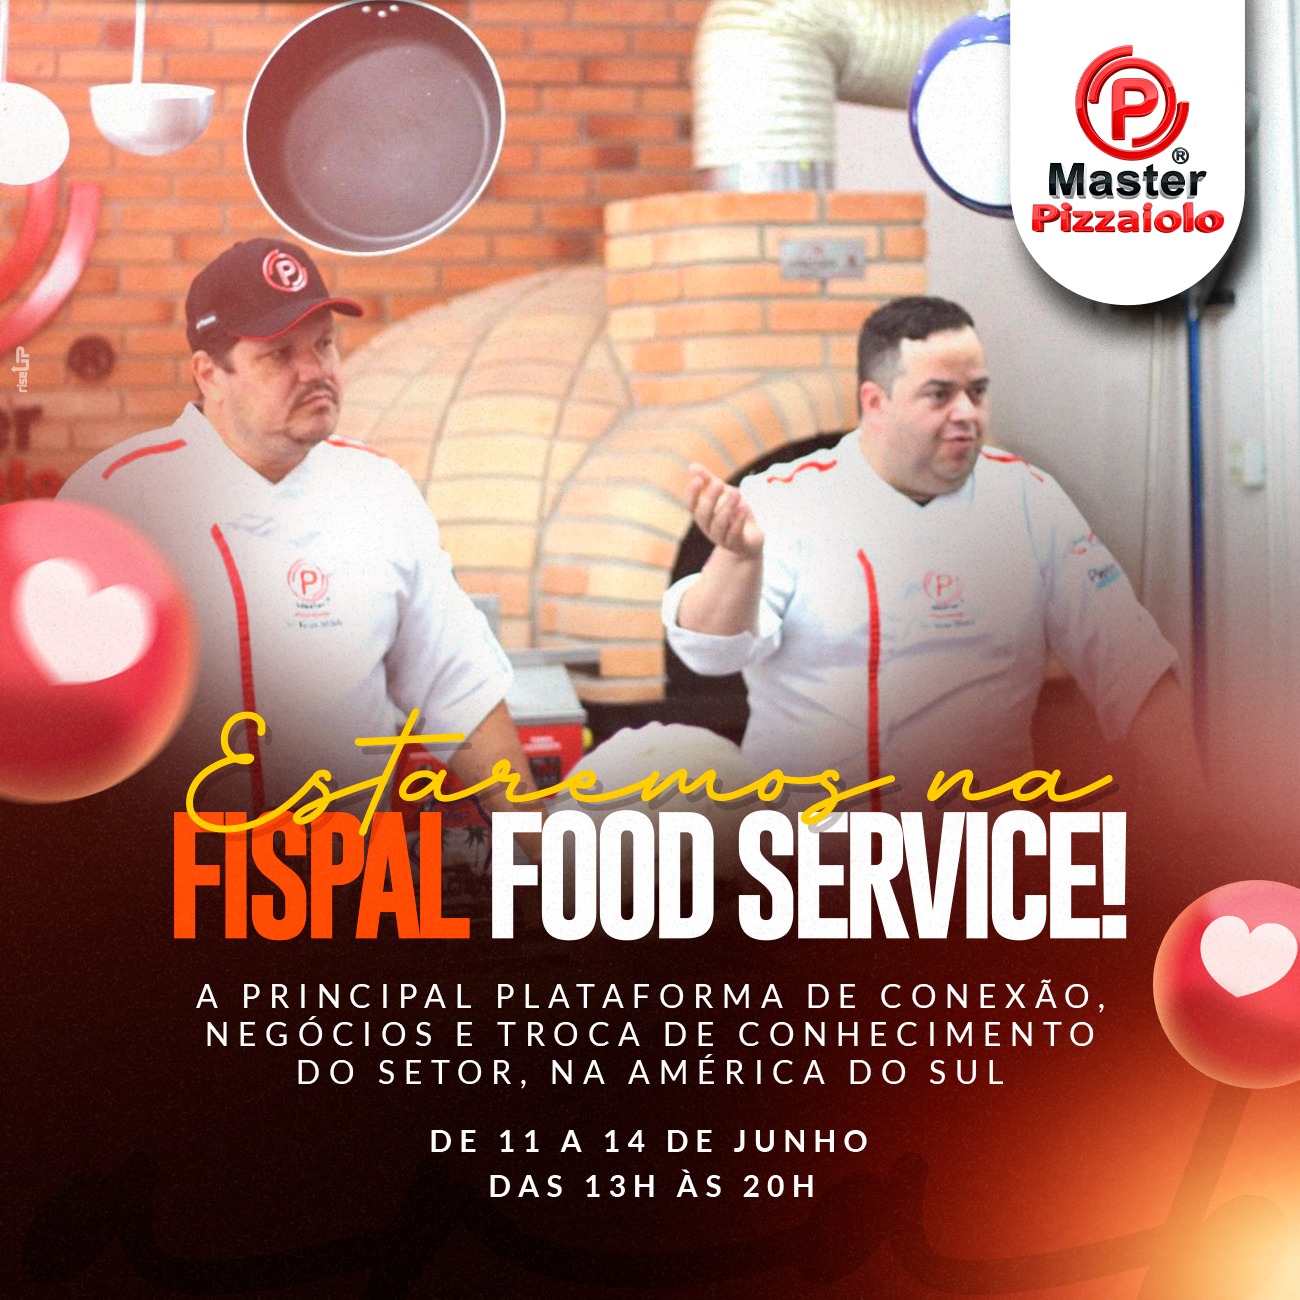 Estaremos no FISPAL FOOD SERVICE! 🤩😱